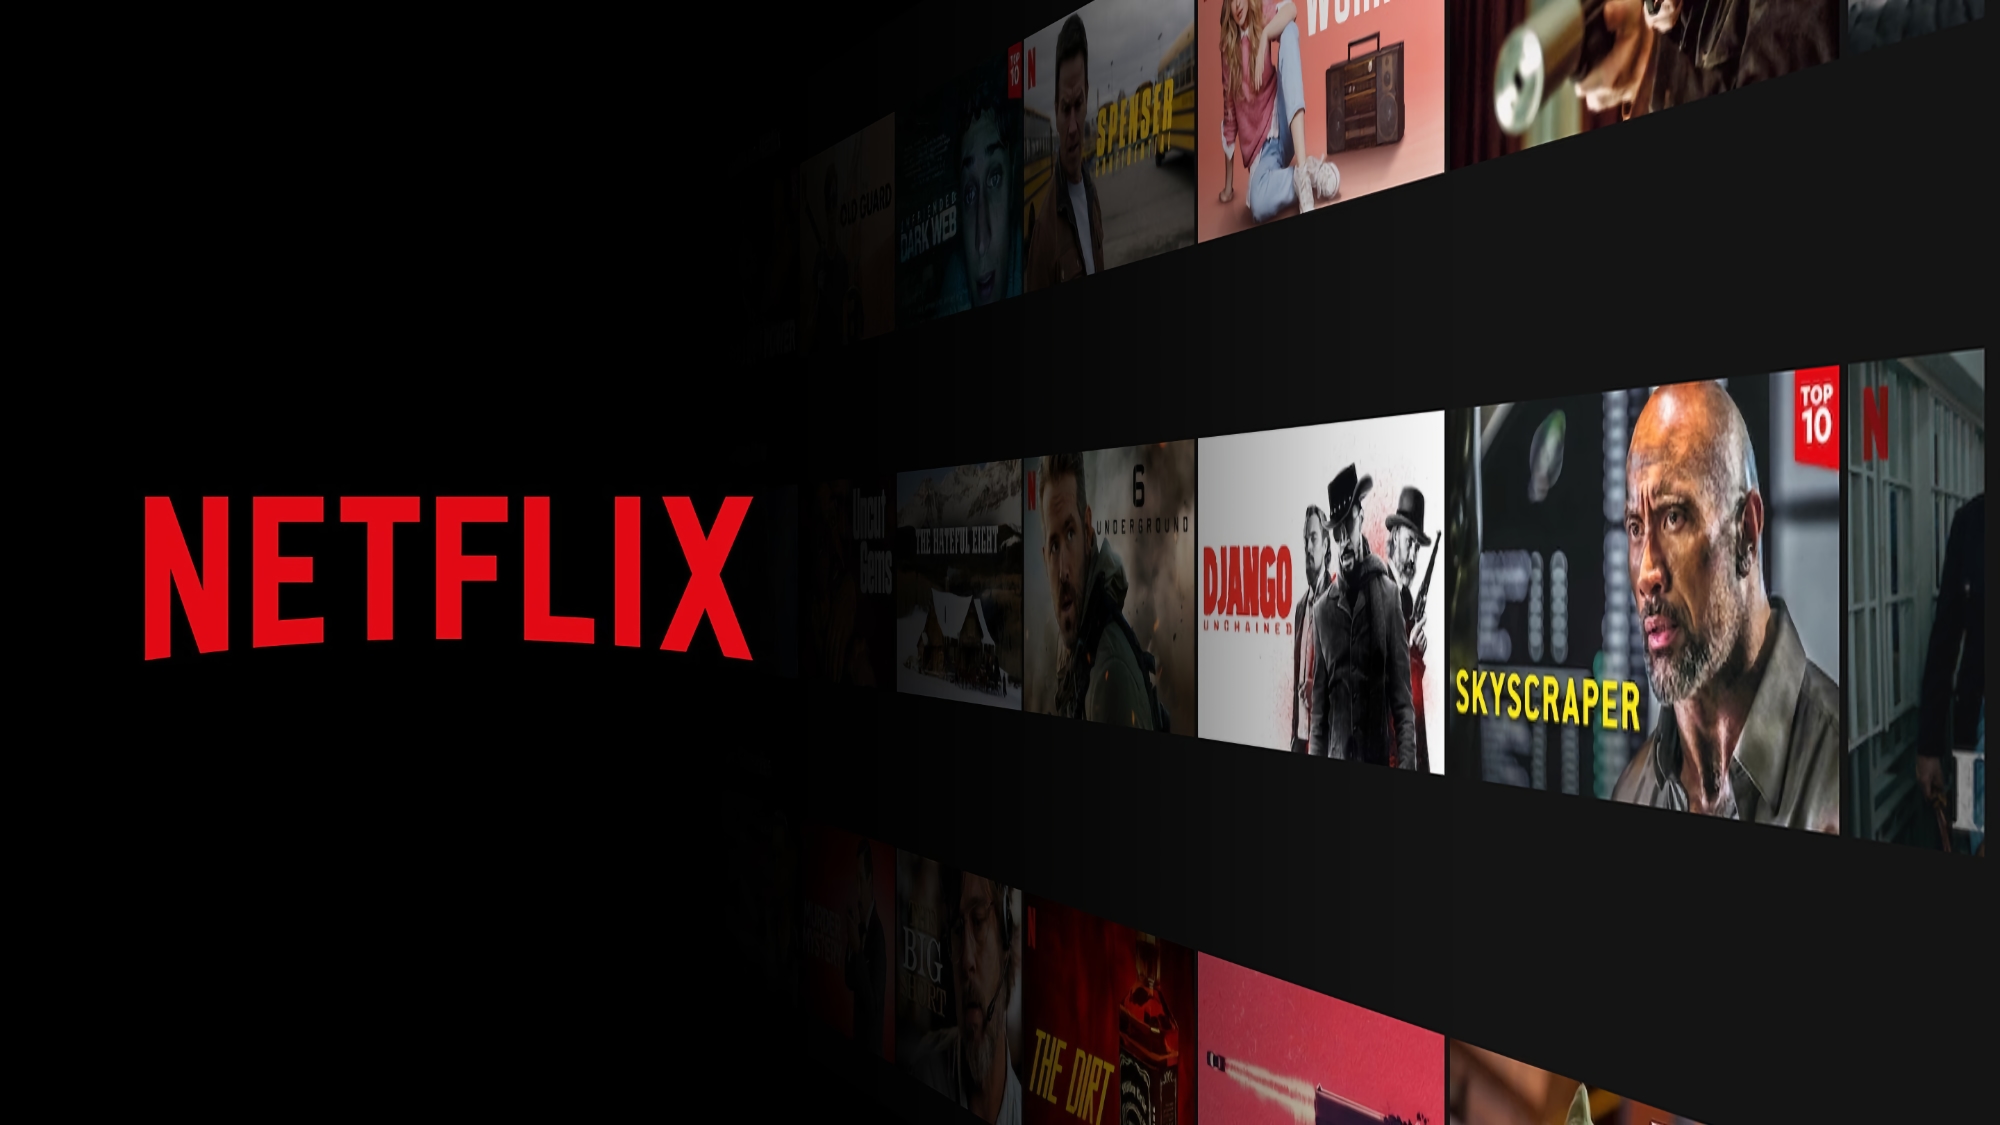 Netflix apre una sede in Polonia, sarà responsabile per l'Ucraina e altri paesi europei